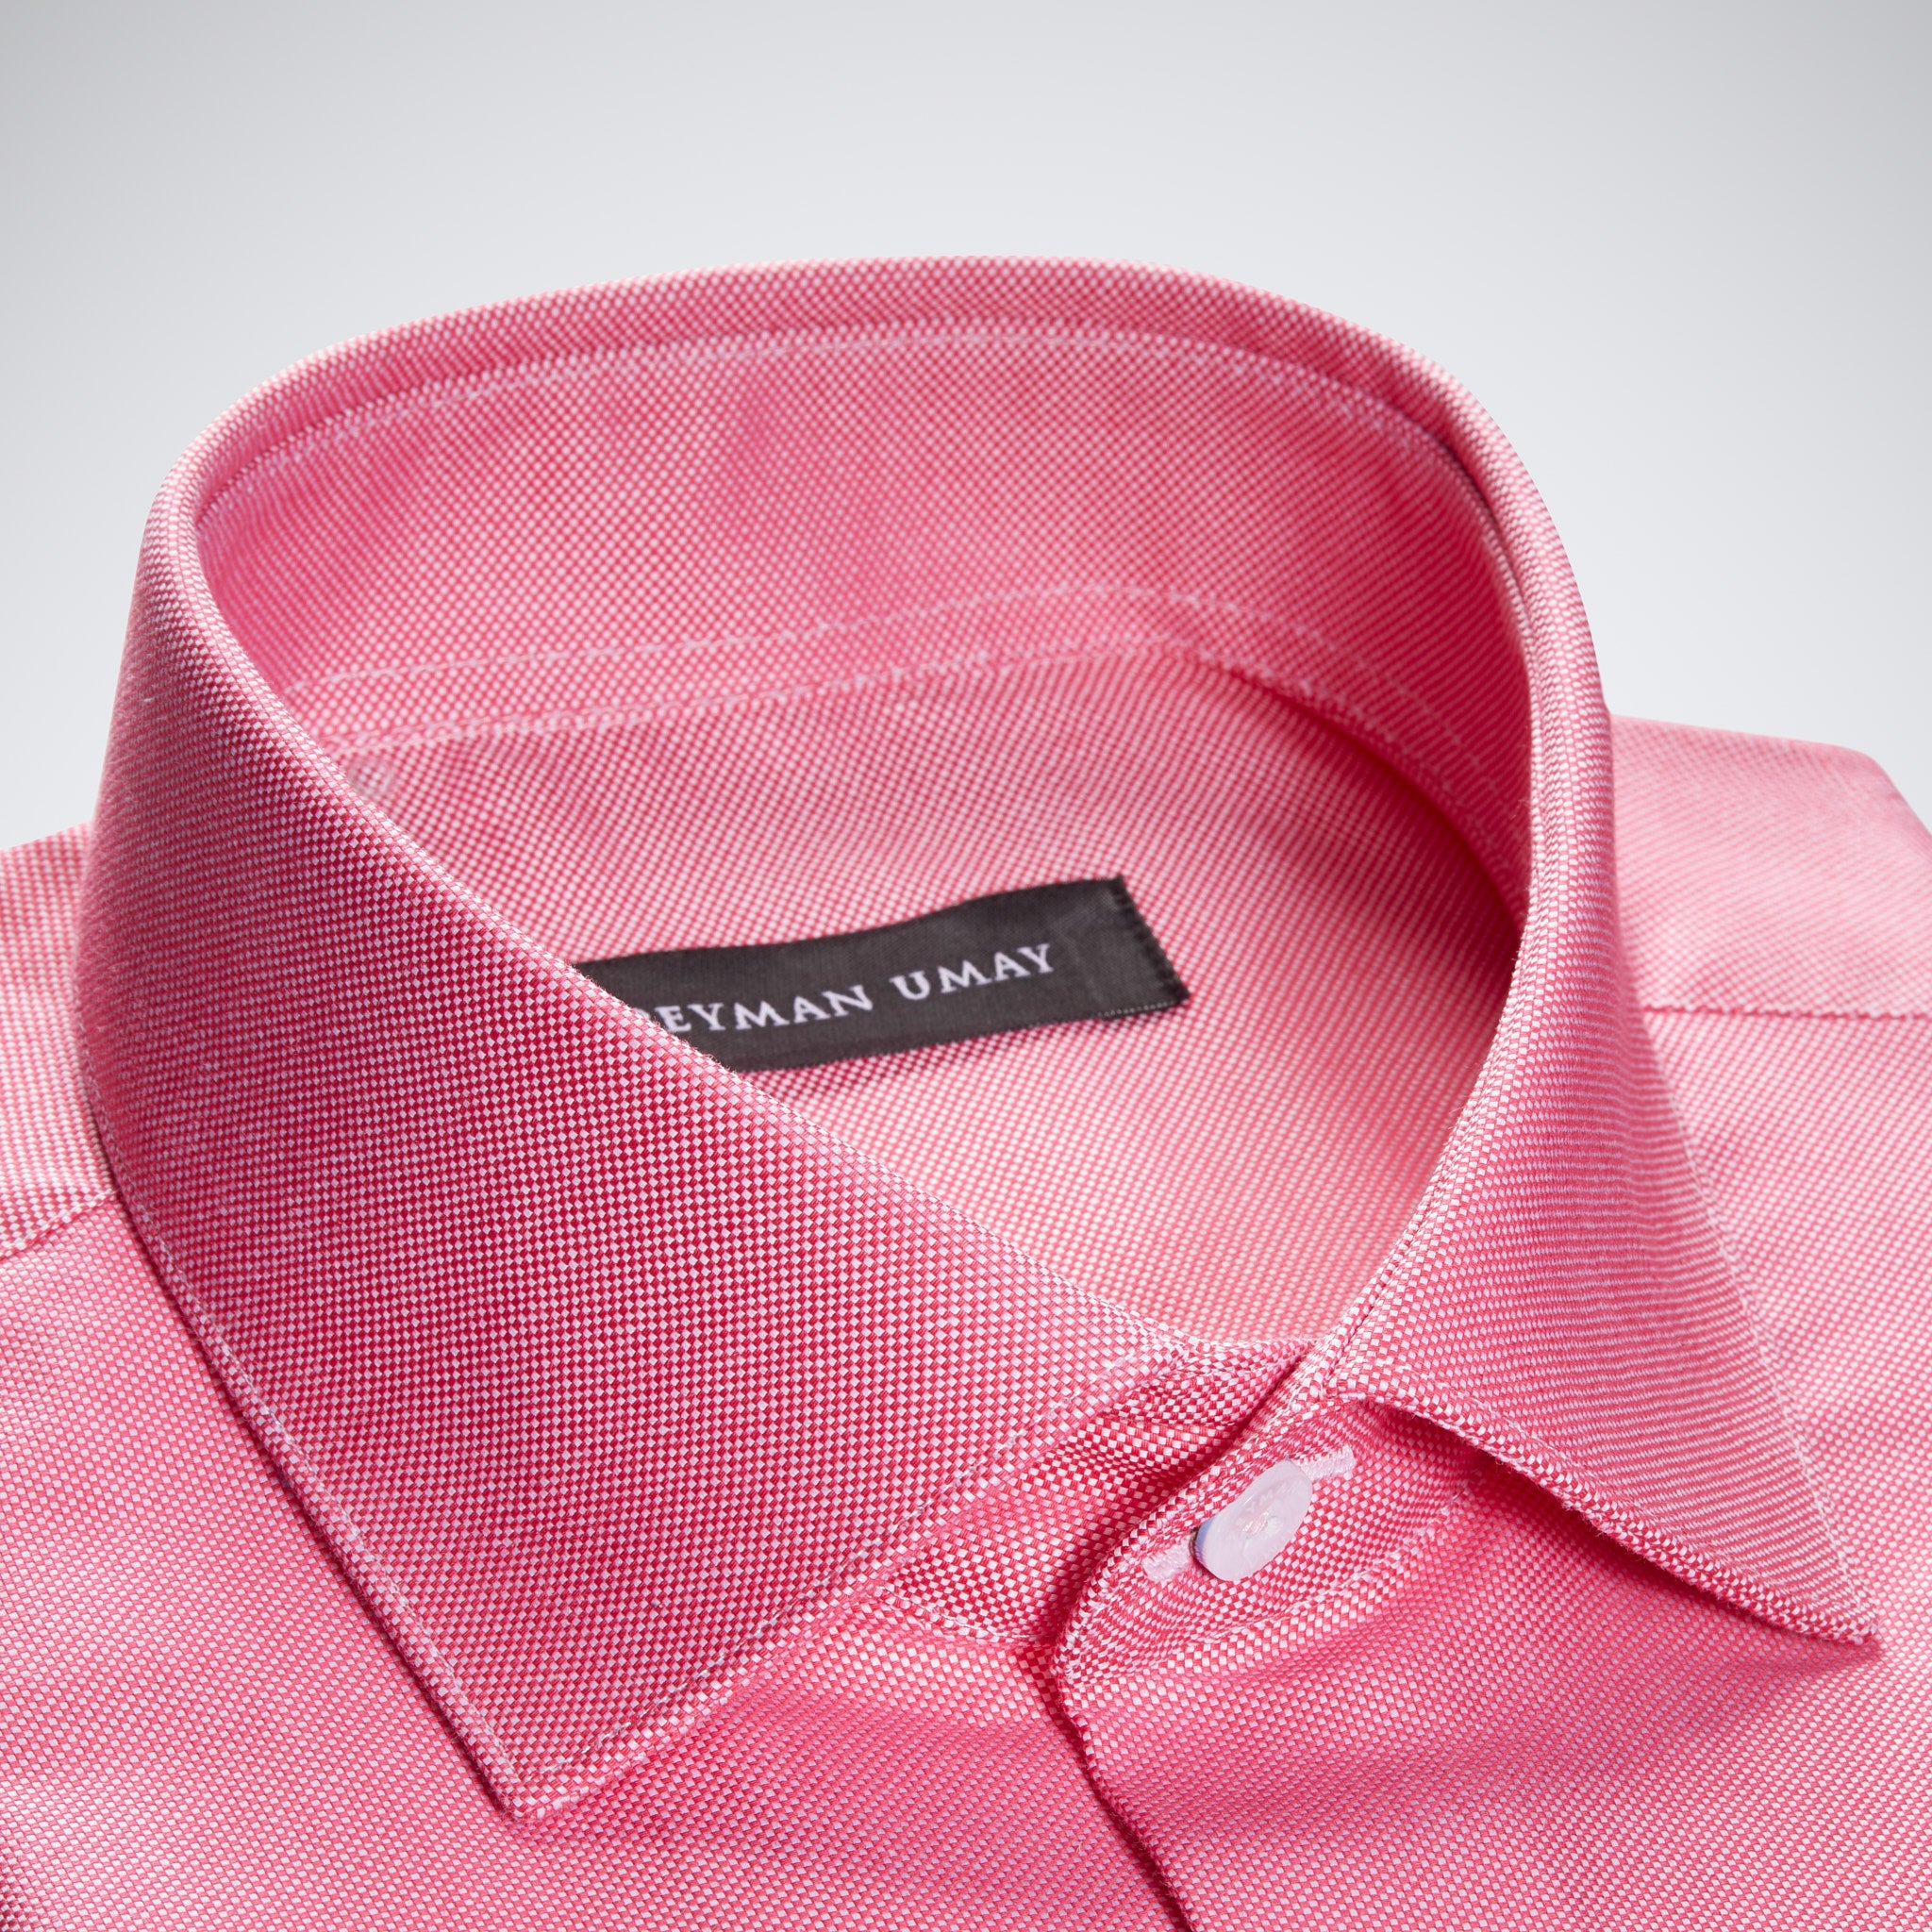 Dark Pink Oxford Cotton Shirt